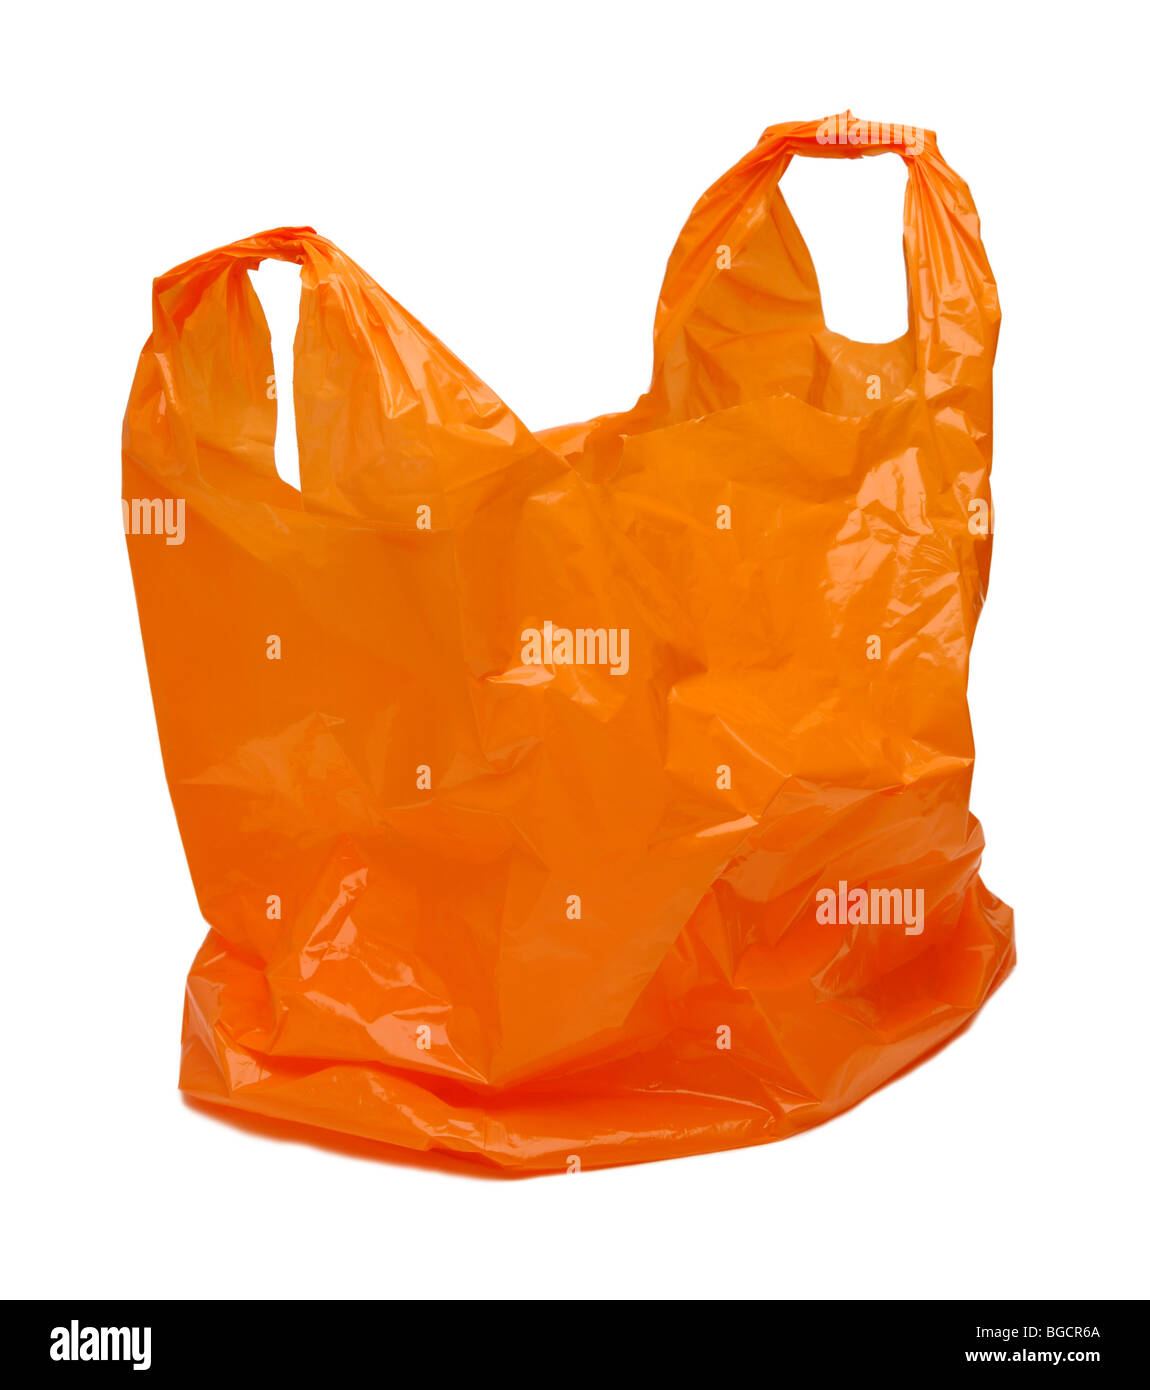 Sac en plastique orange Banque D'Images